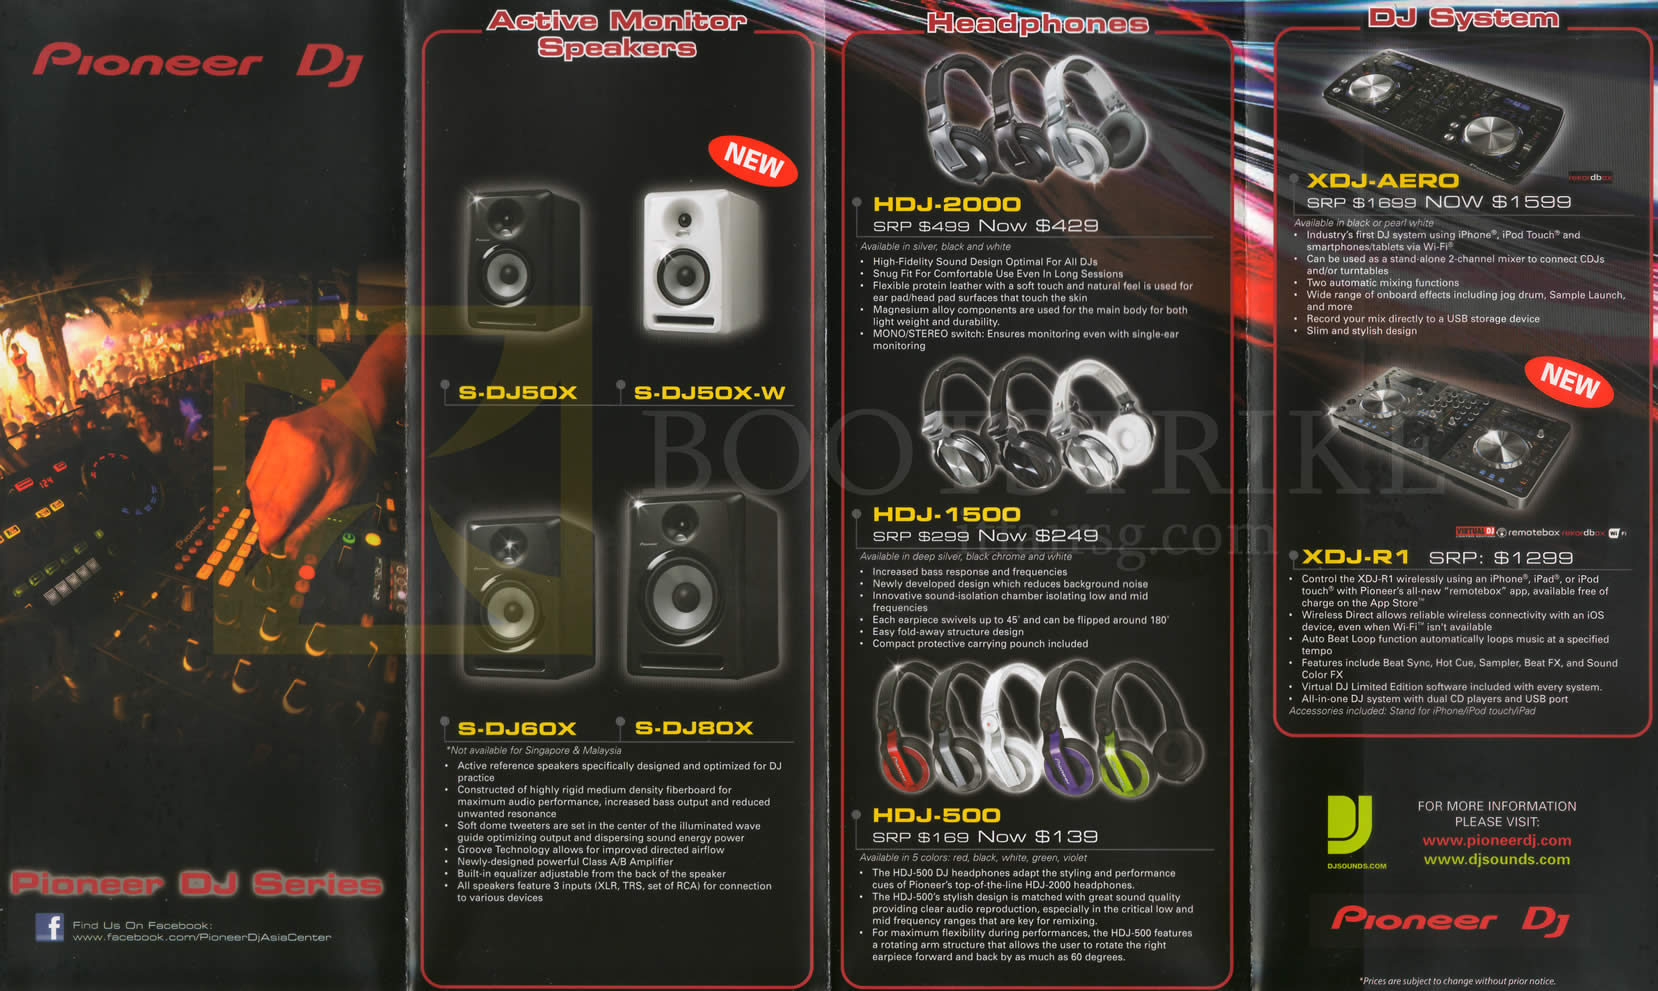 SITEX 2013 price list image brochure of Pioneer DJ Speakers, Headphones, DJ Systems, S-DJ50X, DJ60X, DJ80X, DJ50X-W, HDJ-2000, 1500, 500, XDJ-AERO, R1